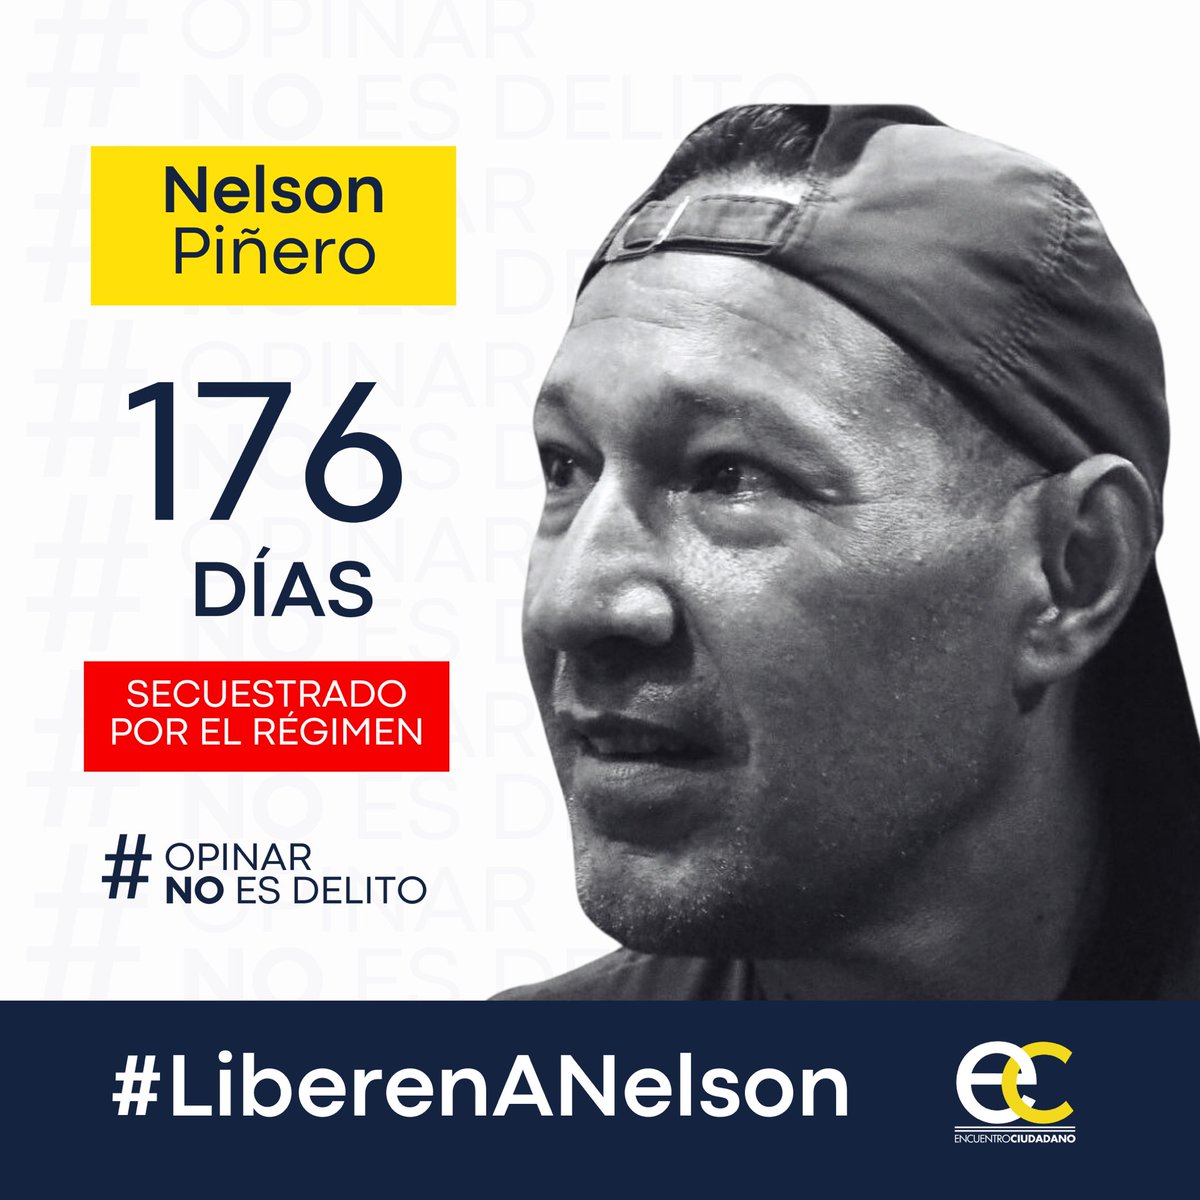 #15Mayo | Nelson Piñero, activista de #EncuentroCiudadano, lleva 176 días secuestrado por el régimen solo por emitir sus opiniones en redes sociales.

#OpinarNoEsDelito y por eso exigimos su liberación inmediata.

#LiberenANelson 
#LiberenALosPresosPolíticos